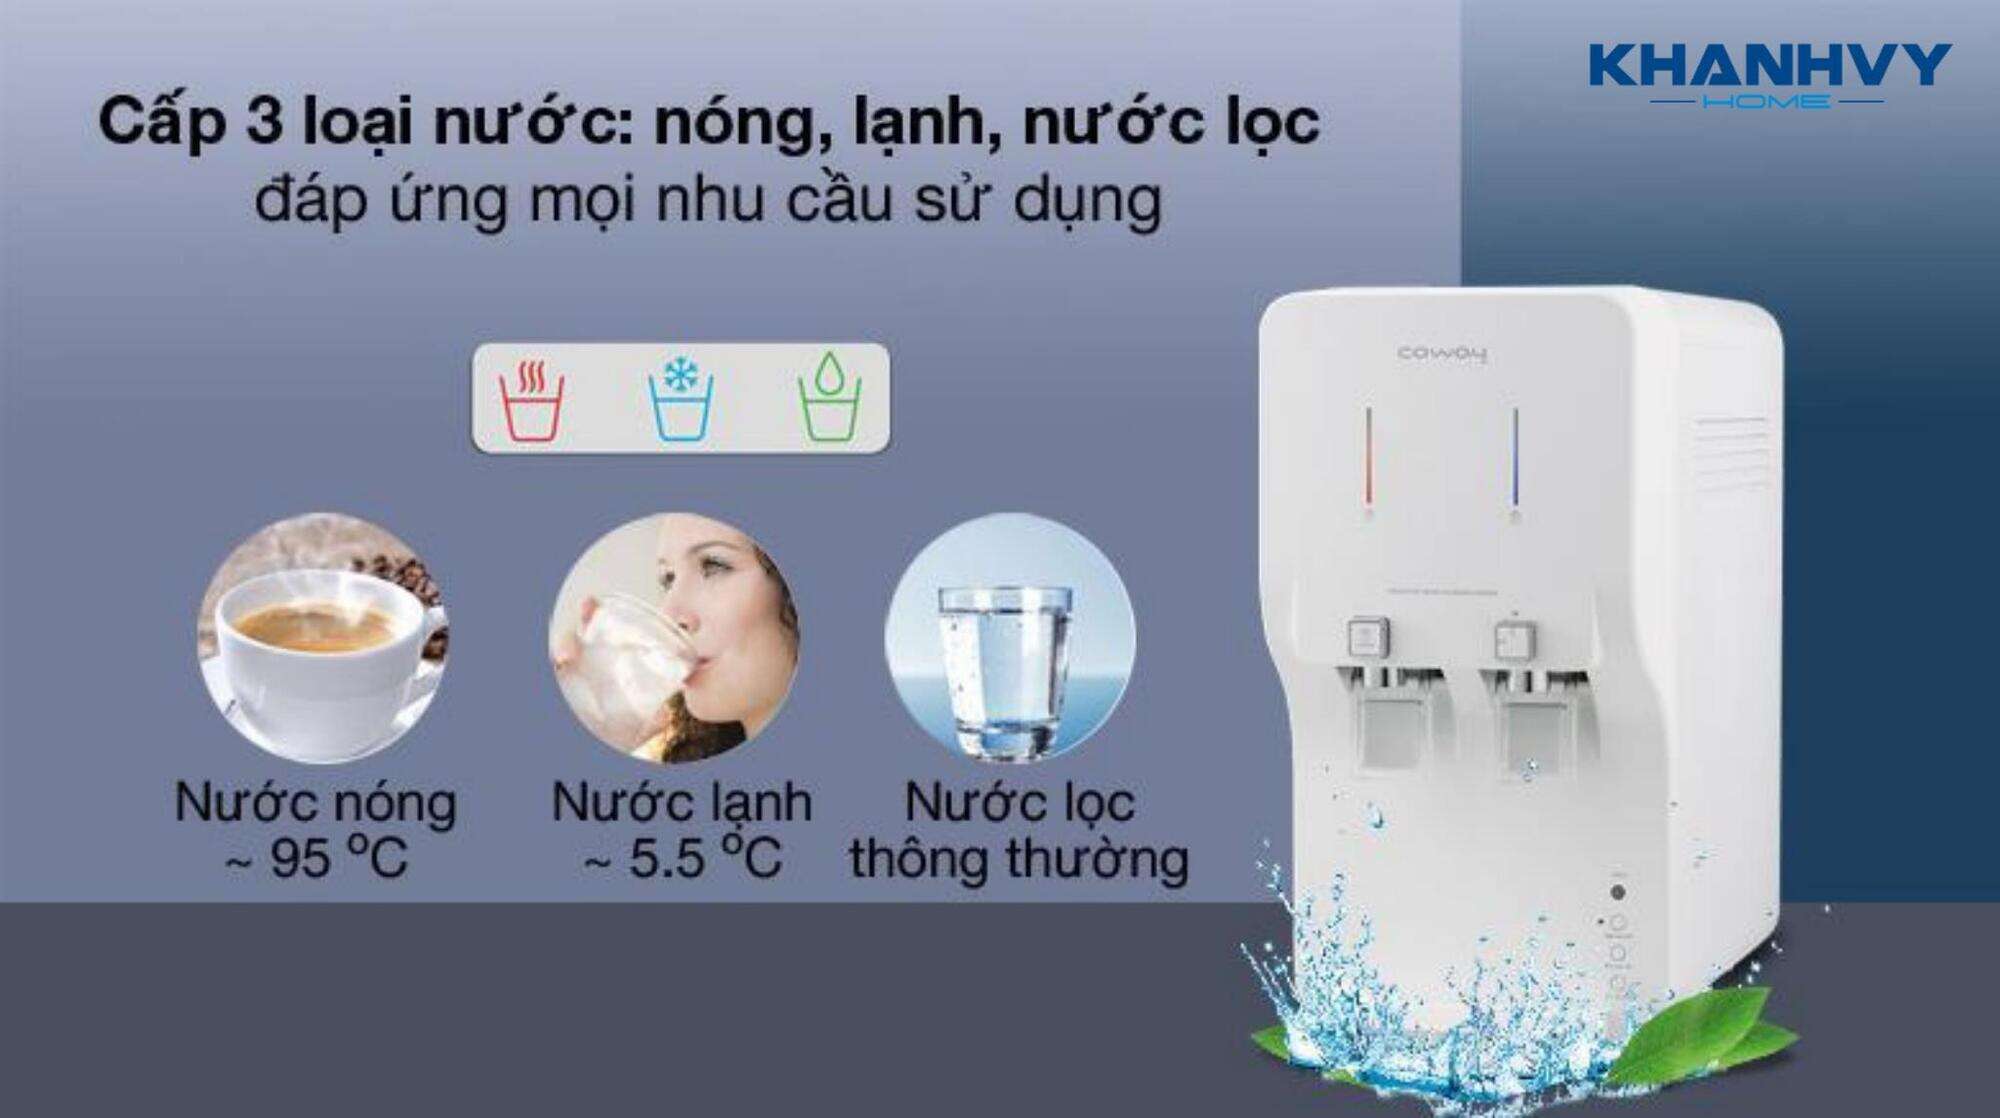 Máy lọc nước cung cấp 3 chế độ nước nóng – lạnh – thường (nguội) phục vụ đa dạng nhu cầu sử dụng